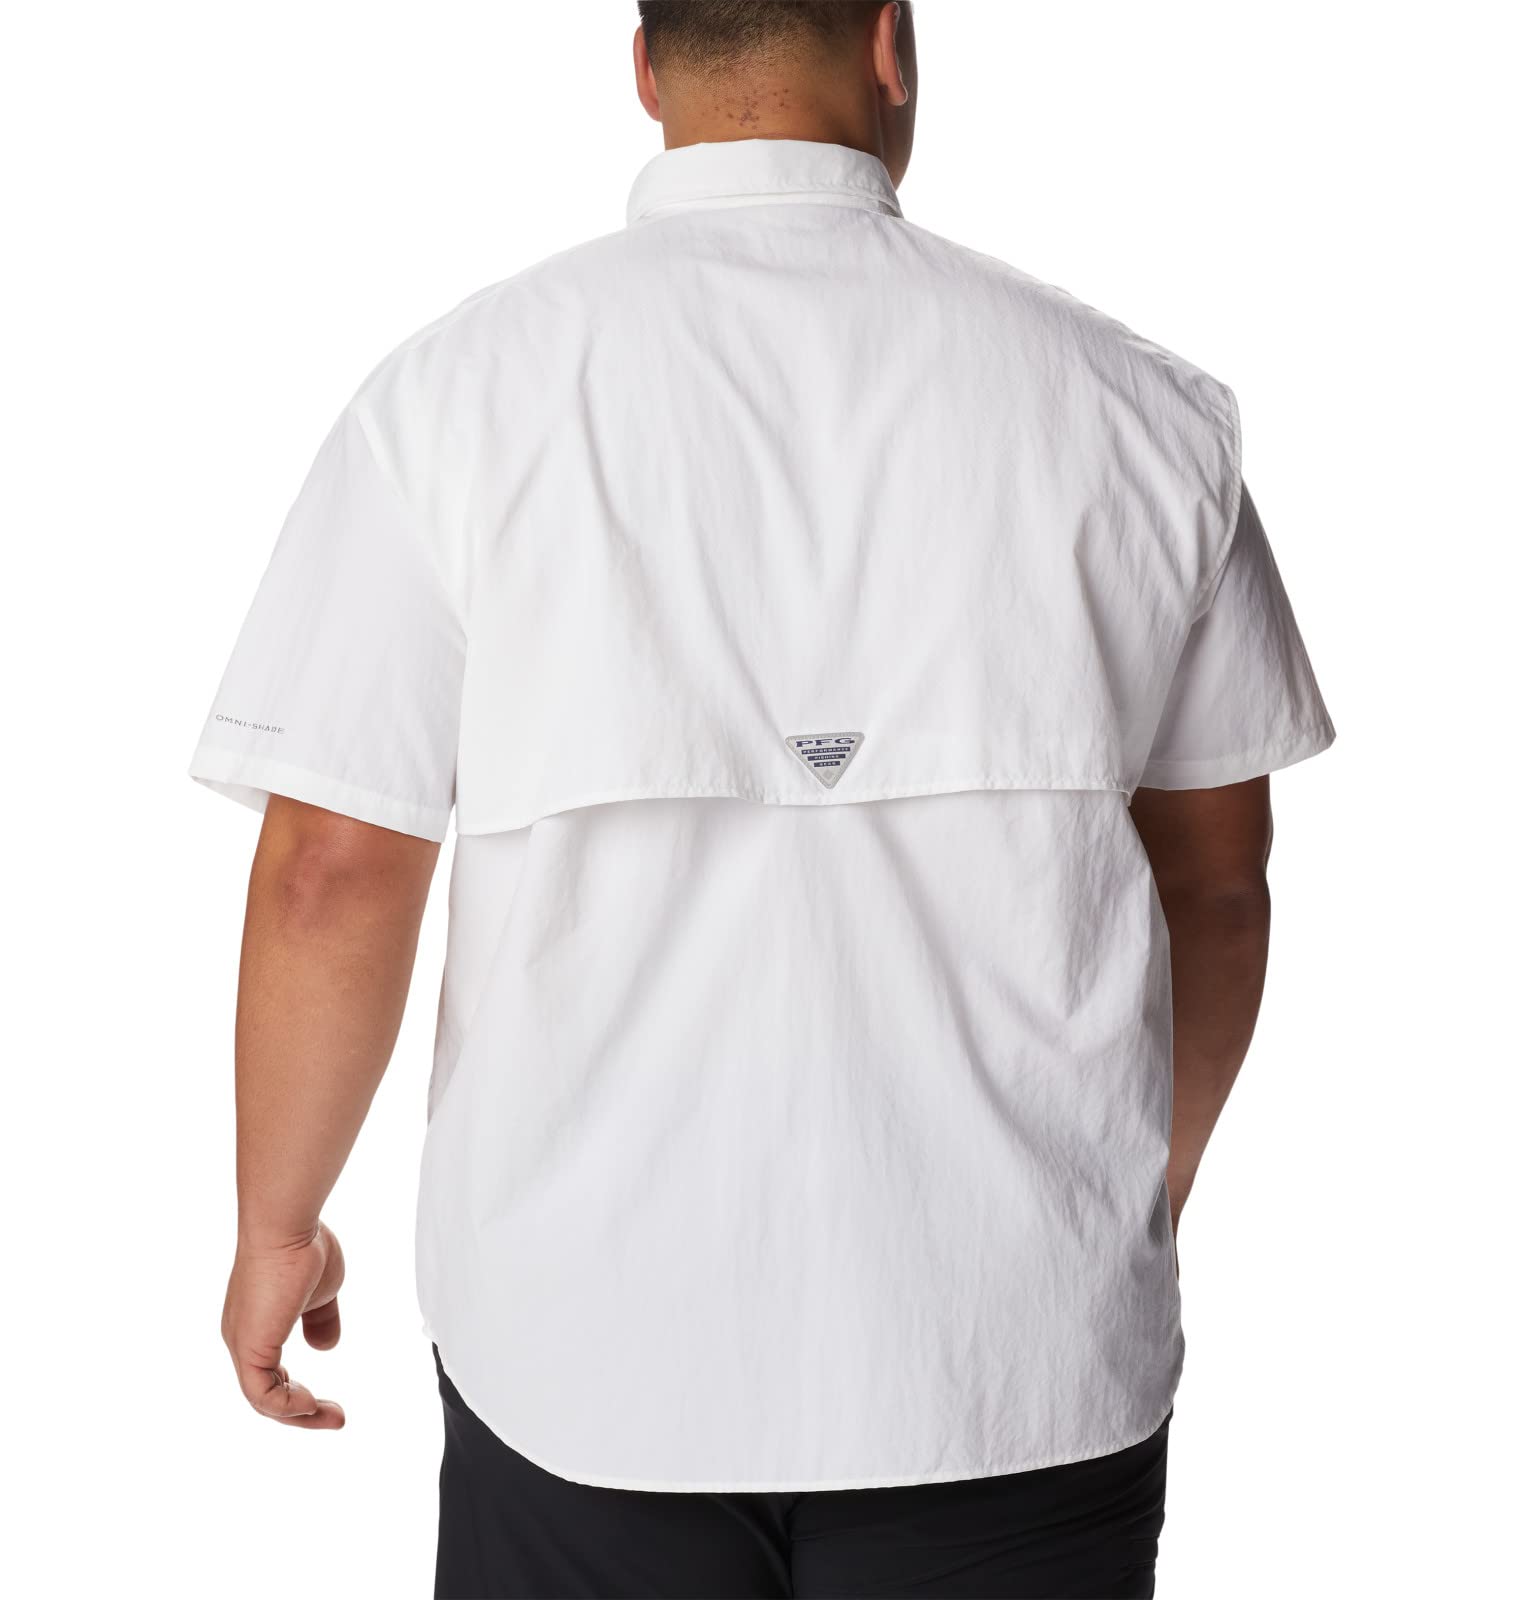 Columbia Men's Bahama II UPF 30 Short Sleeve PFG Fishing Shirt, White, Medium